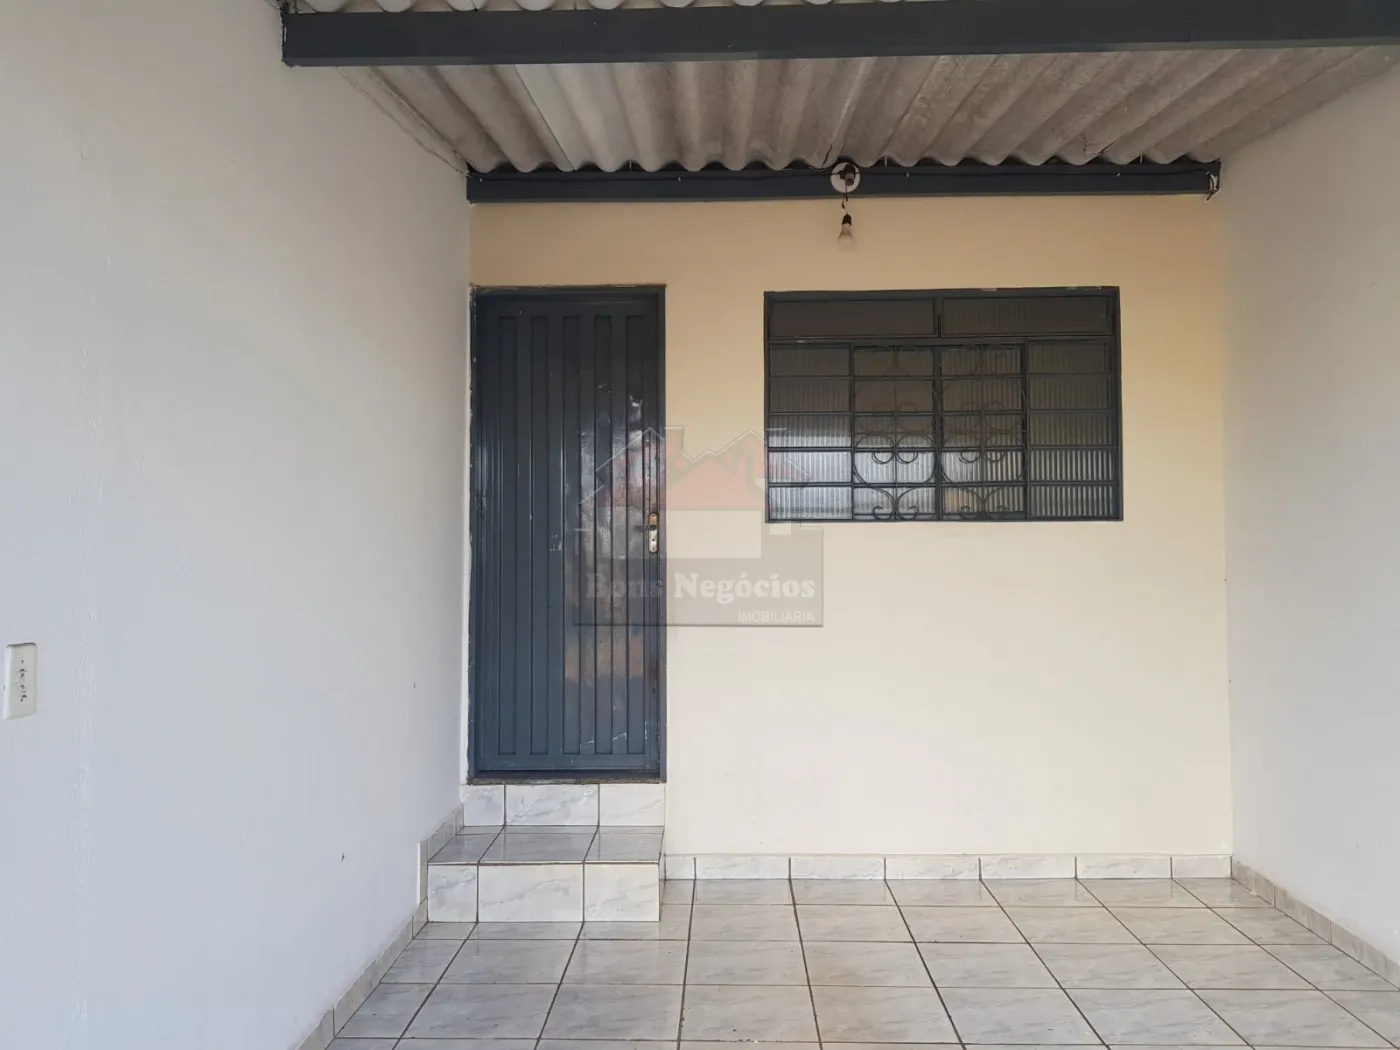 Alugar Casa / Padrão em Ribeirão Preto R$ 850,00 - Foto 11